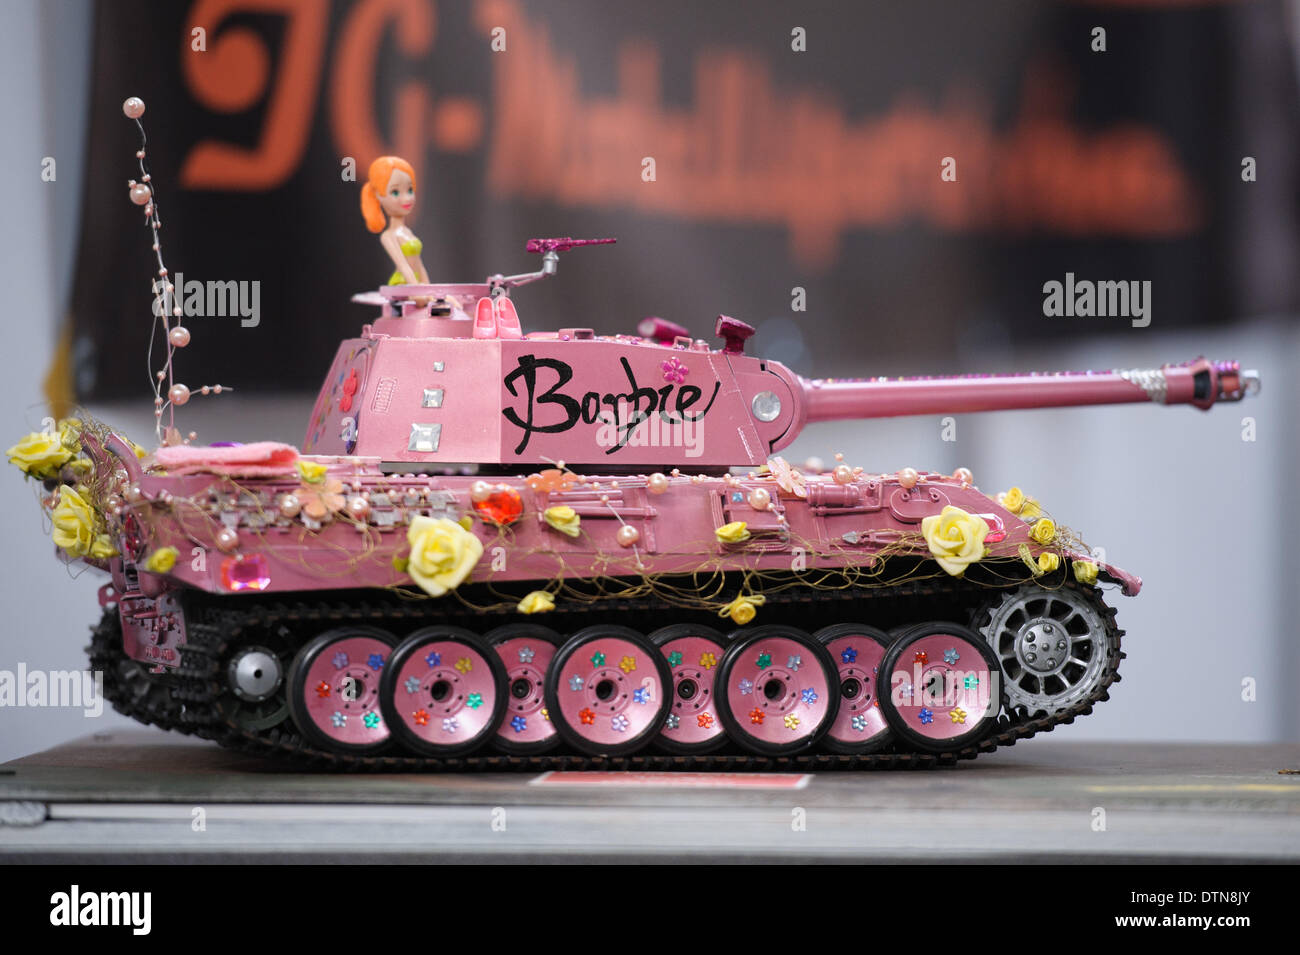 Erfurt, Allemagne. Feb 21, 2014. Un modèle d'un réservoir rose Barbie 'lettres' sur le modèle des échanges équitables 'Erlebniswelt - Frankreich Frankreich, Spiel & Unterhaltung' à Erfurt, Allemagne, 21 février 2014. Photo : Candy Welz/dpa/Alamy Live News Banque D'Images